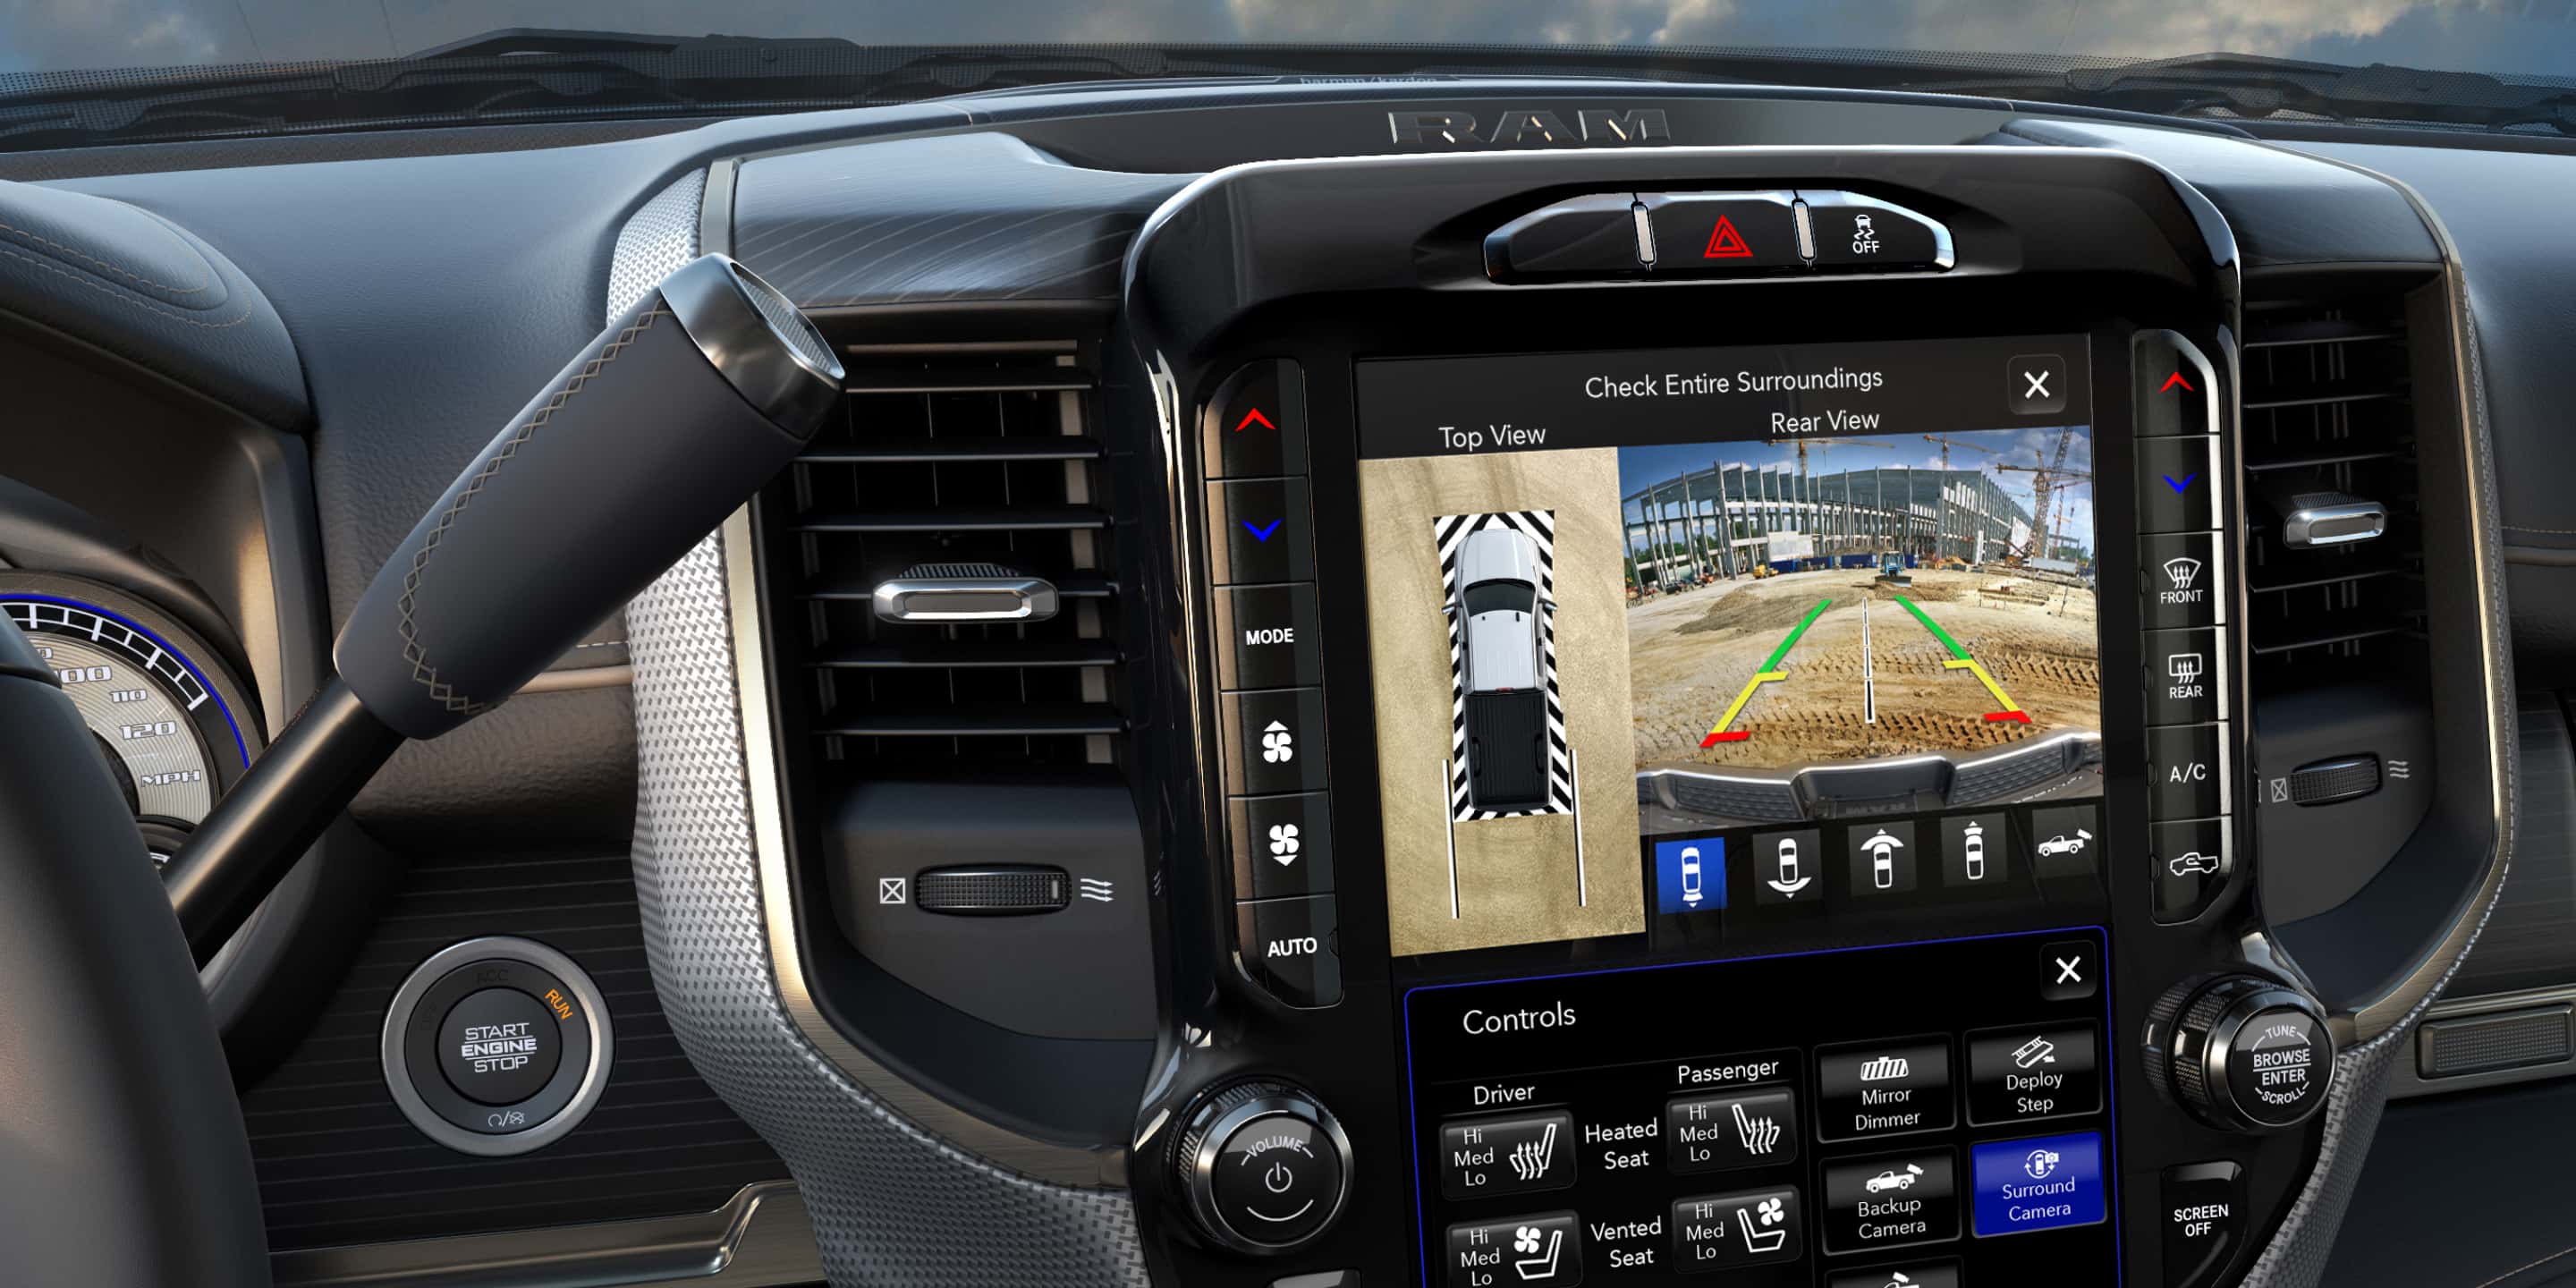 Primer plano de la pantalla táctil Uconnect en la Ram 2500 2021 donde se ve el vehículo visto de arriba y el área detrás del vehículo cortesía de la cámara de visión del entorno.